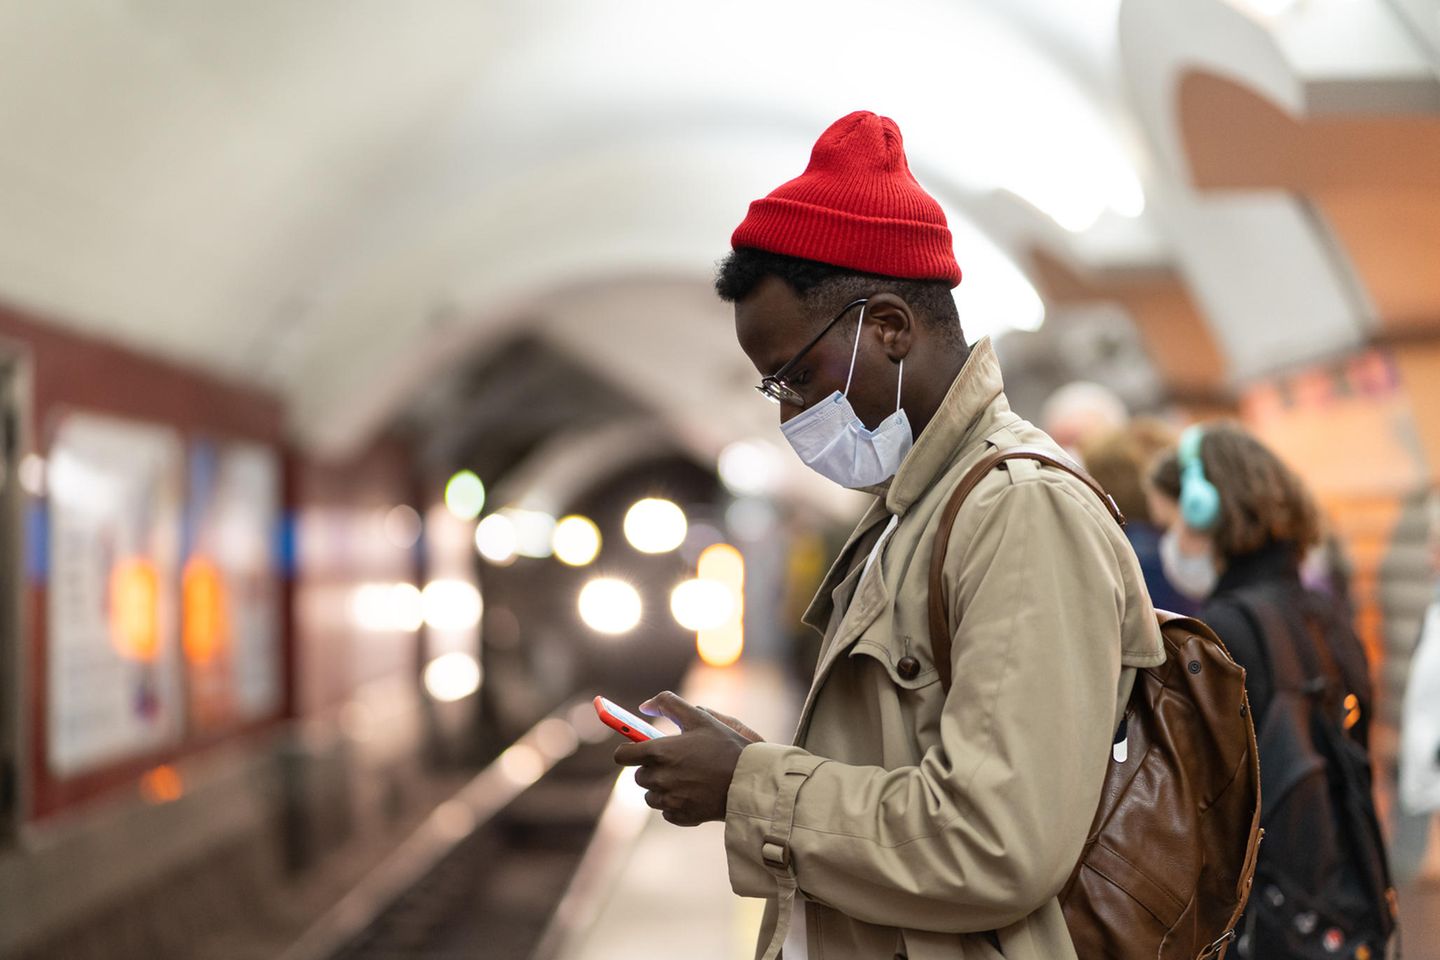 Mann mit Maske steht am Bahnsteig und schaut auf sein Smartphone